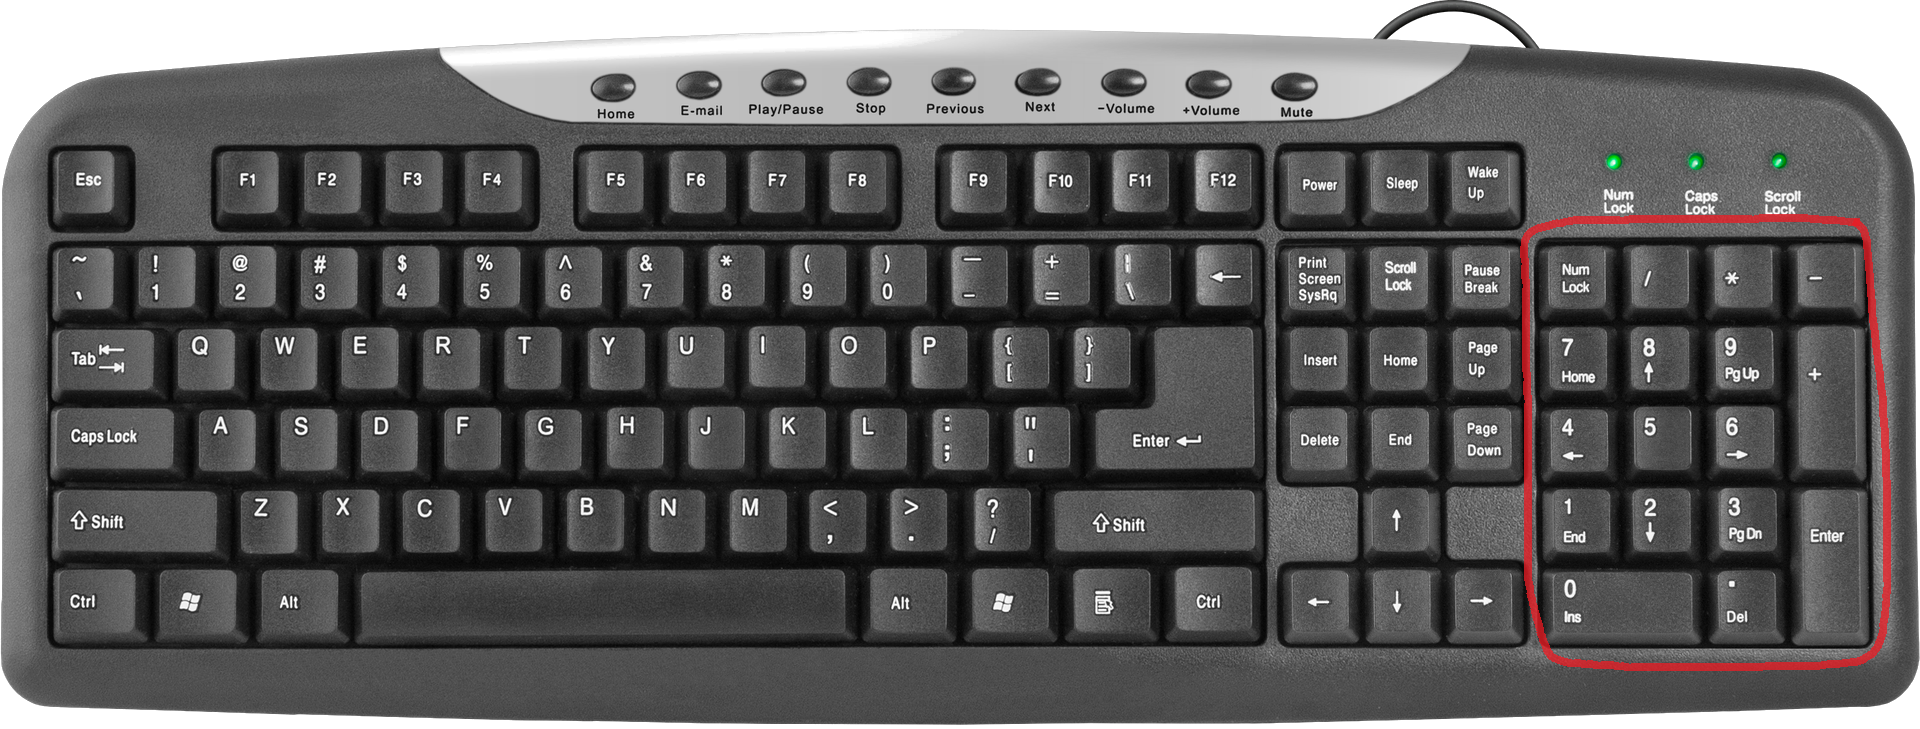 Num-клавиатура